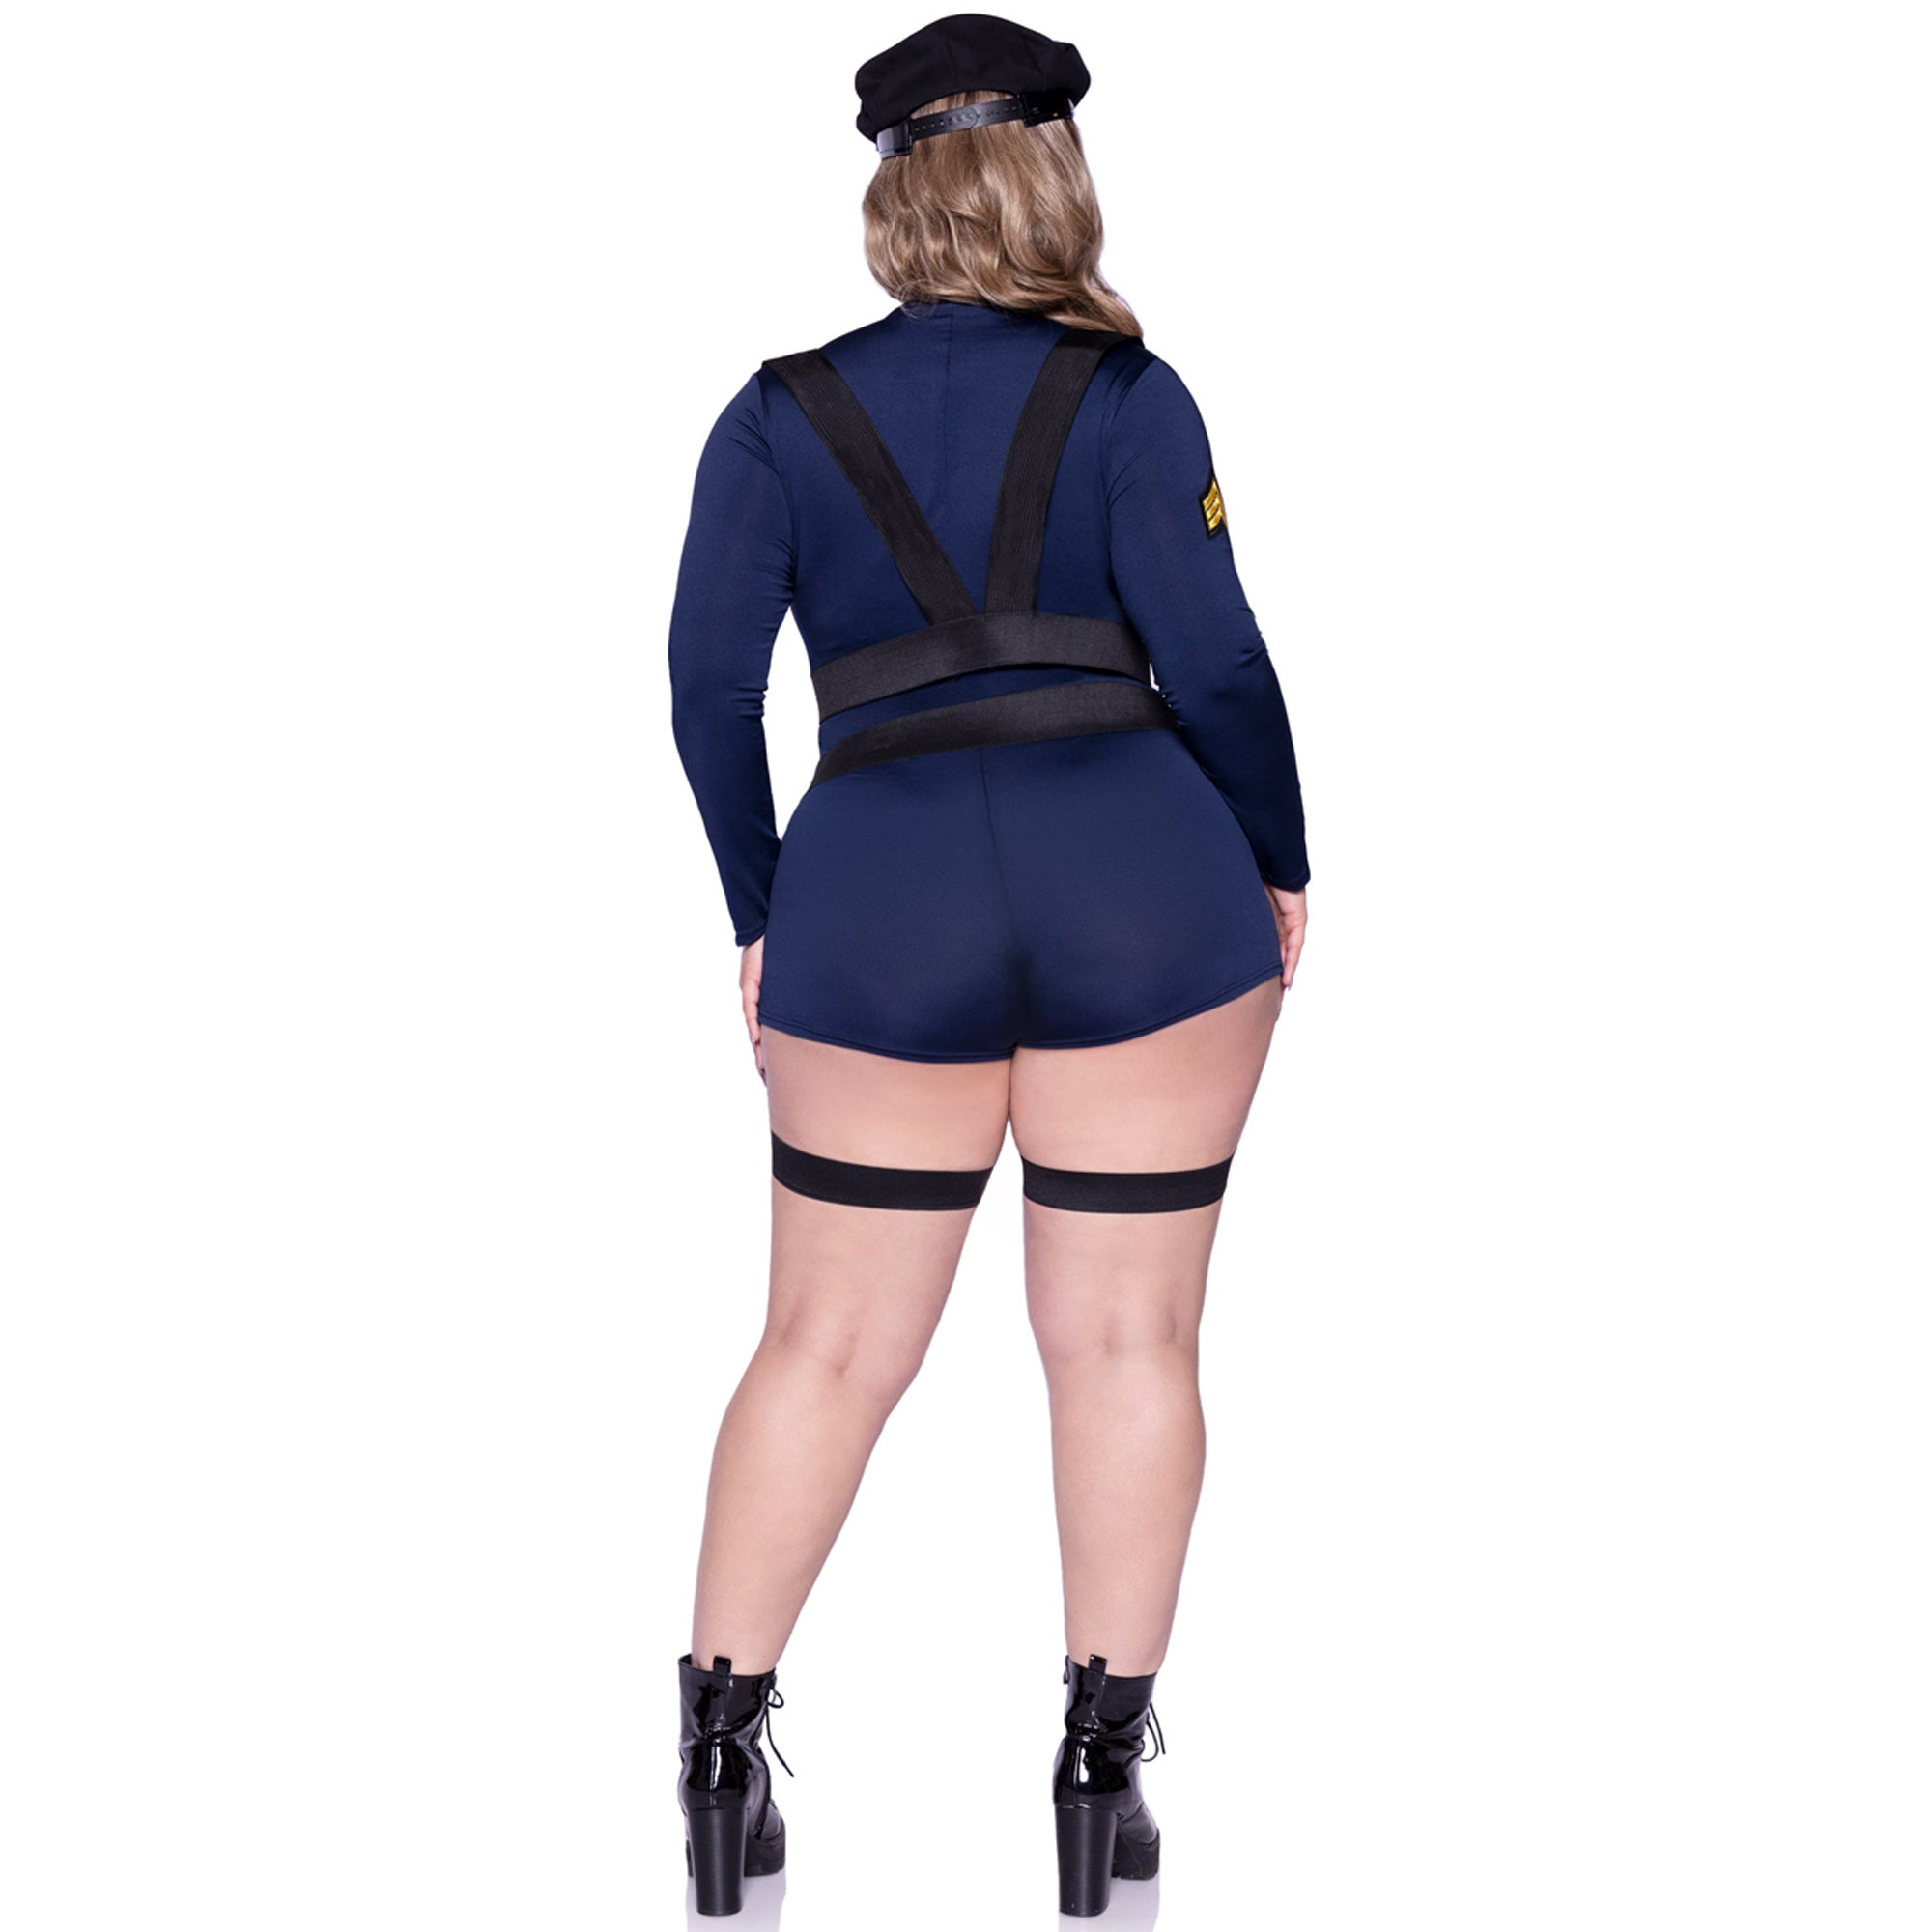 Costume sexy d'agent de la circulation - Taille M (39-36) | Bleu marine et  noir - 1 ensemble